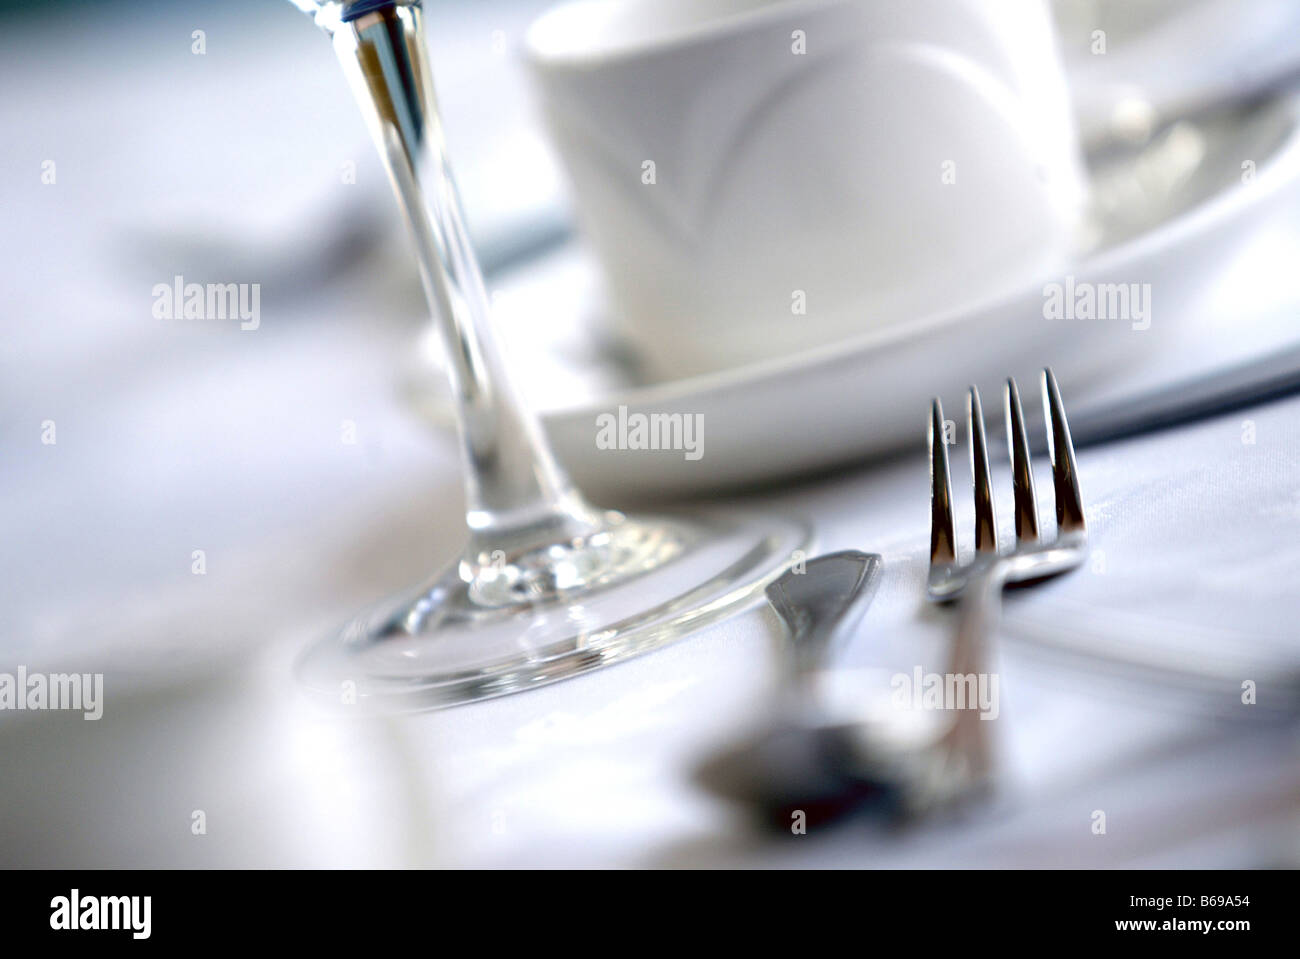 Lugar en una mesa de restaurante con Tenedor Spoon vino y copa de cristal Foto de stock